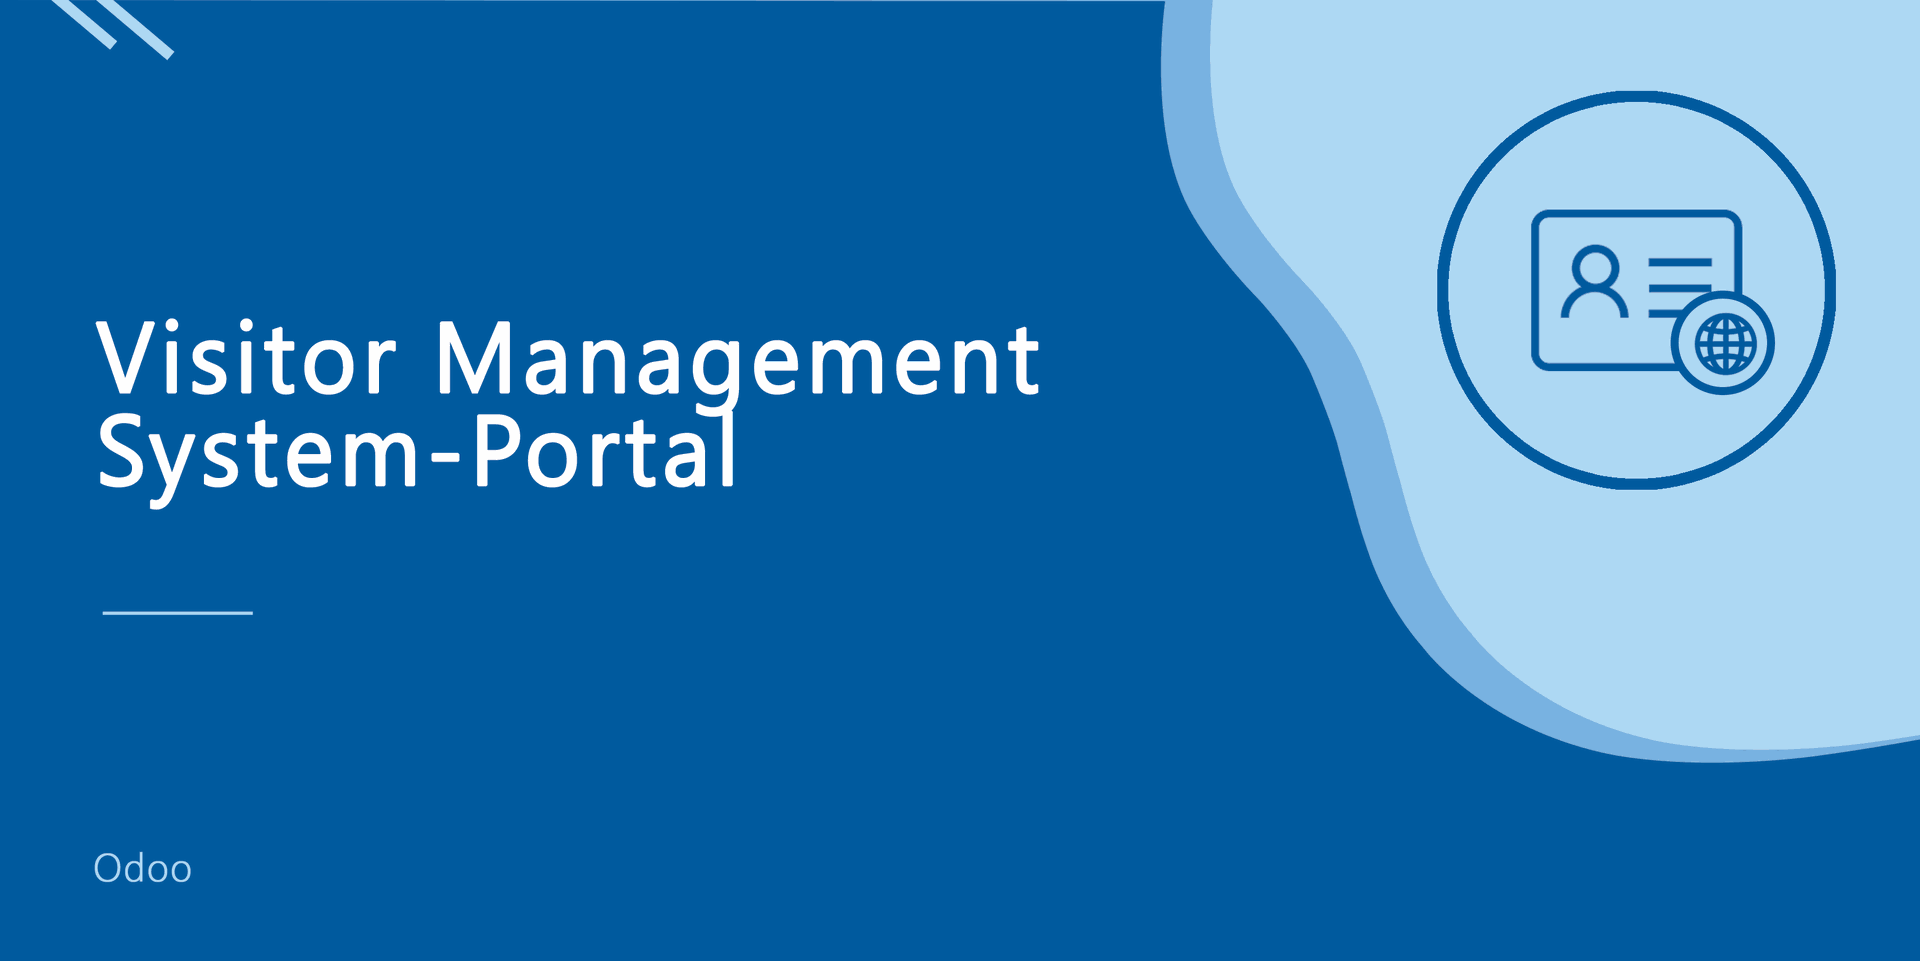 Visitor Management System-Portal
